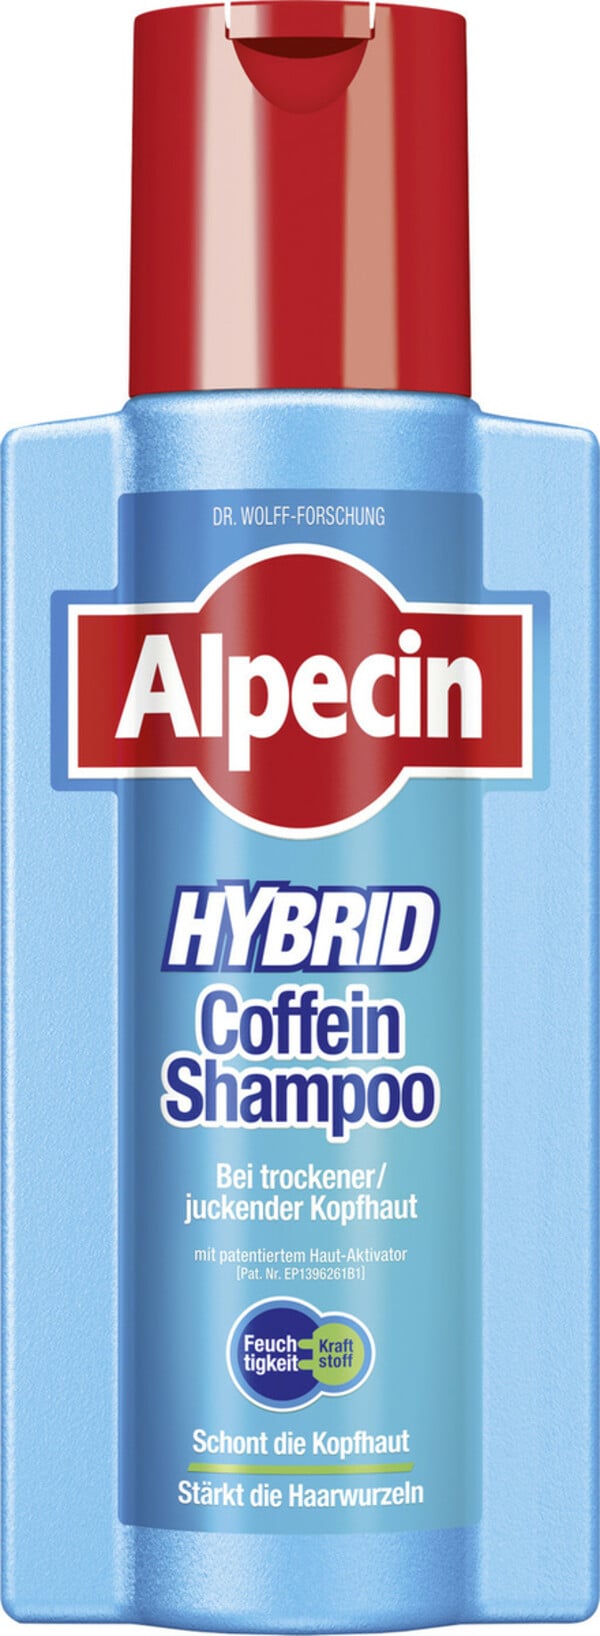 Bild 1 von Alpecin Hybrid Coffein Shampoo 250ML